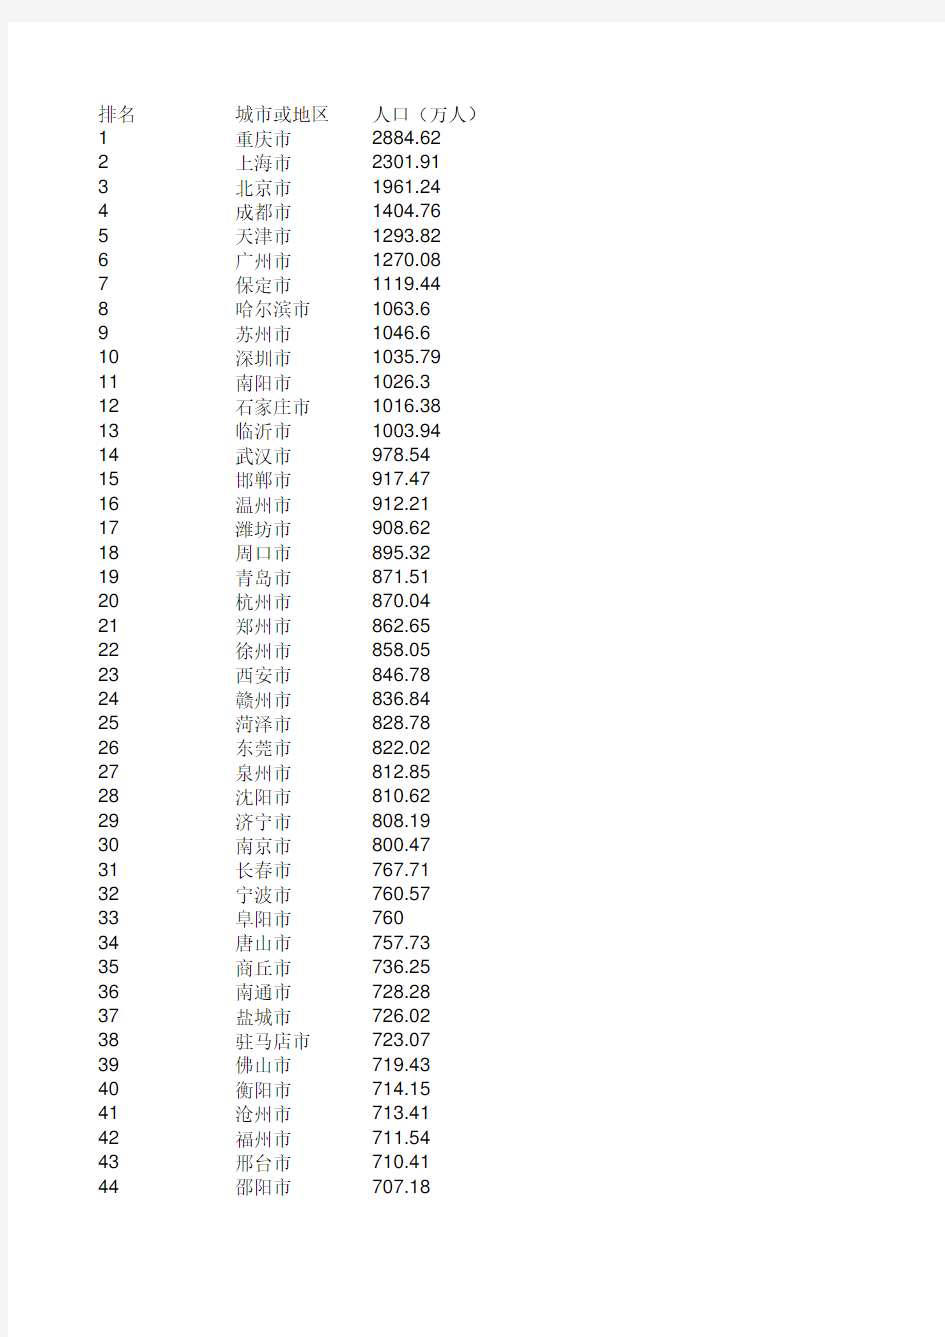 中国城市人口排名表